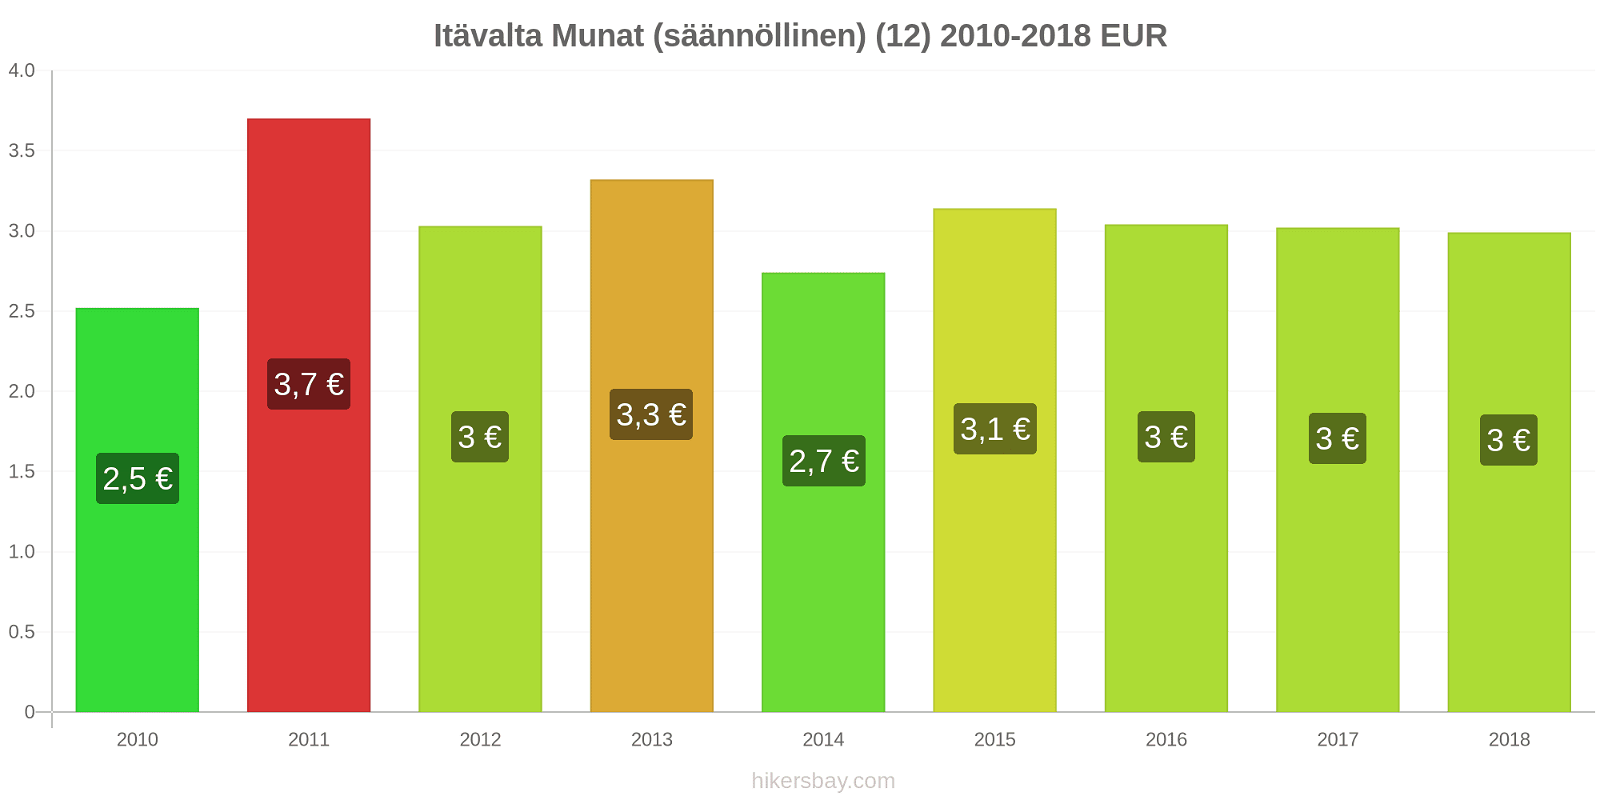 Itävalta hintojen muutokset Munat (säännöllinen) (12) hikersbay.com